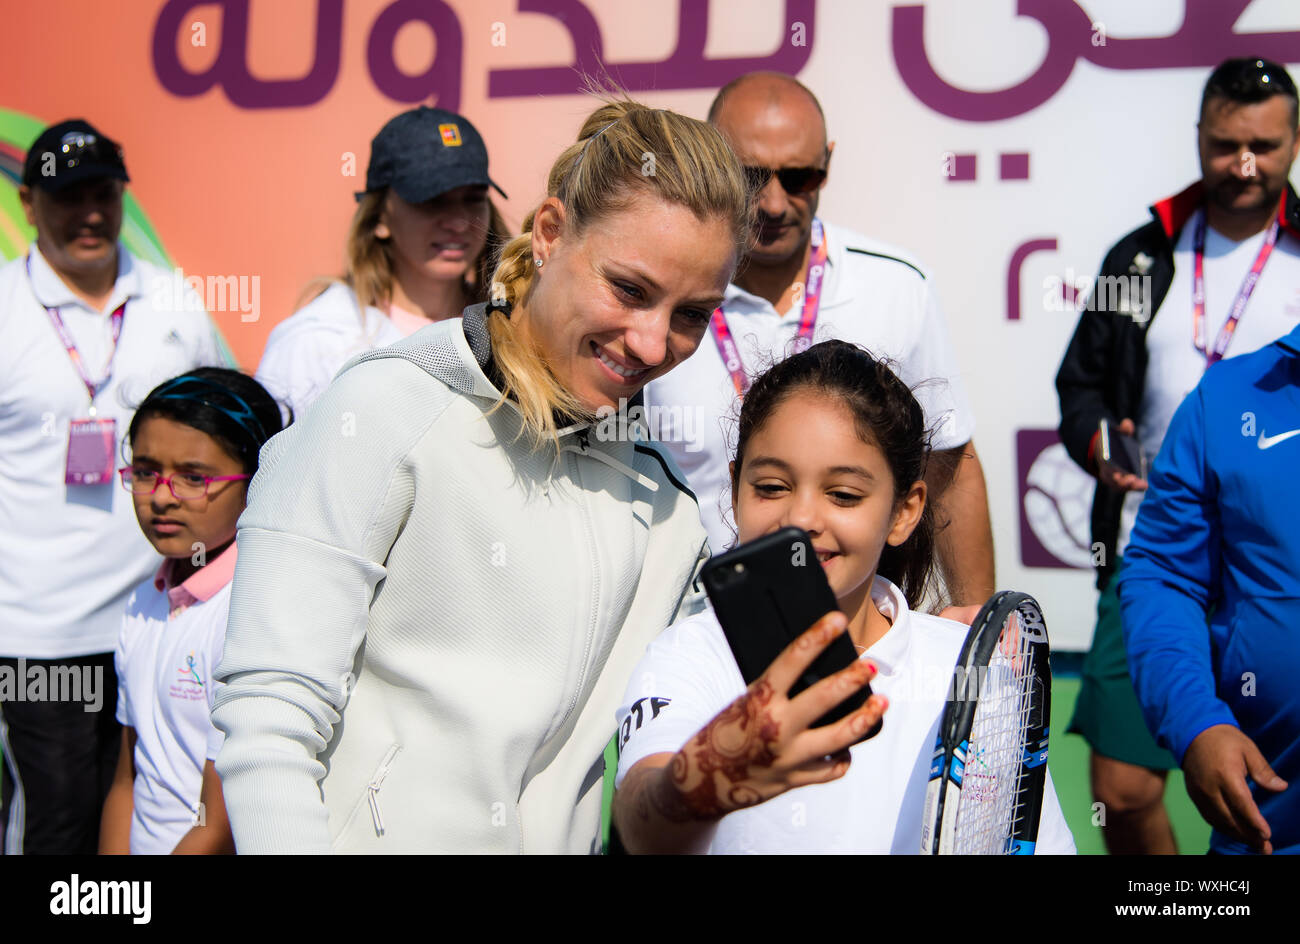 Angelique Kerber in Deutschland während einer Nationalen Tag des Sports Kinder Klinik an der 2019 Qatar Total Open WTA Premier Tennis Turnier Stockfoto